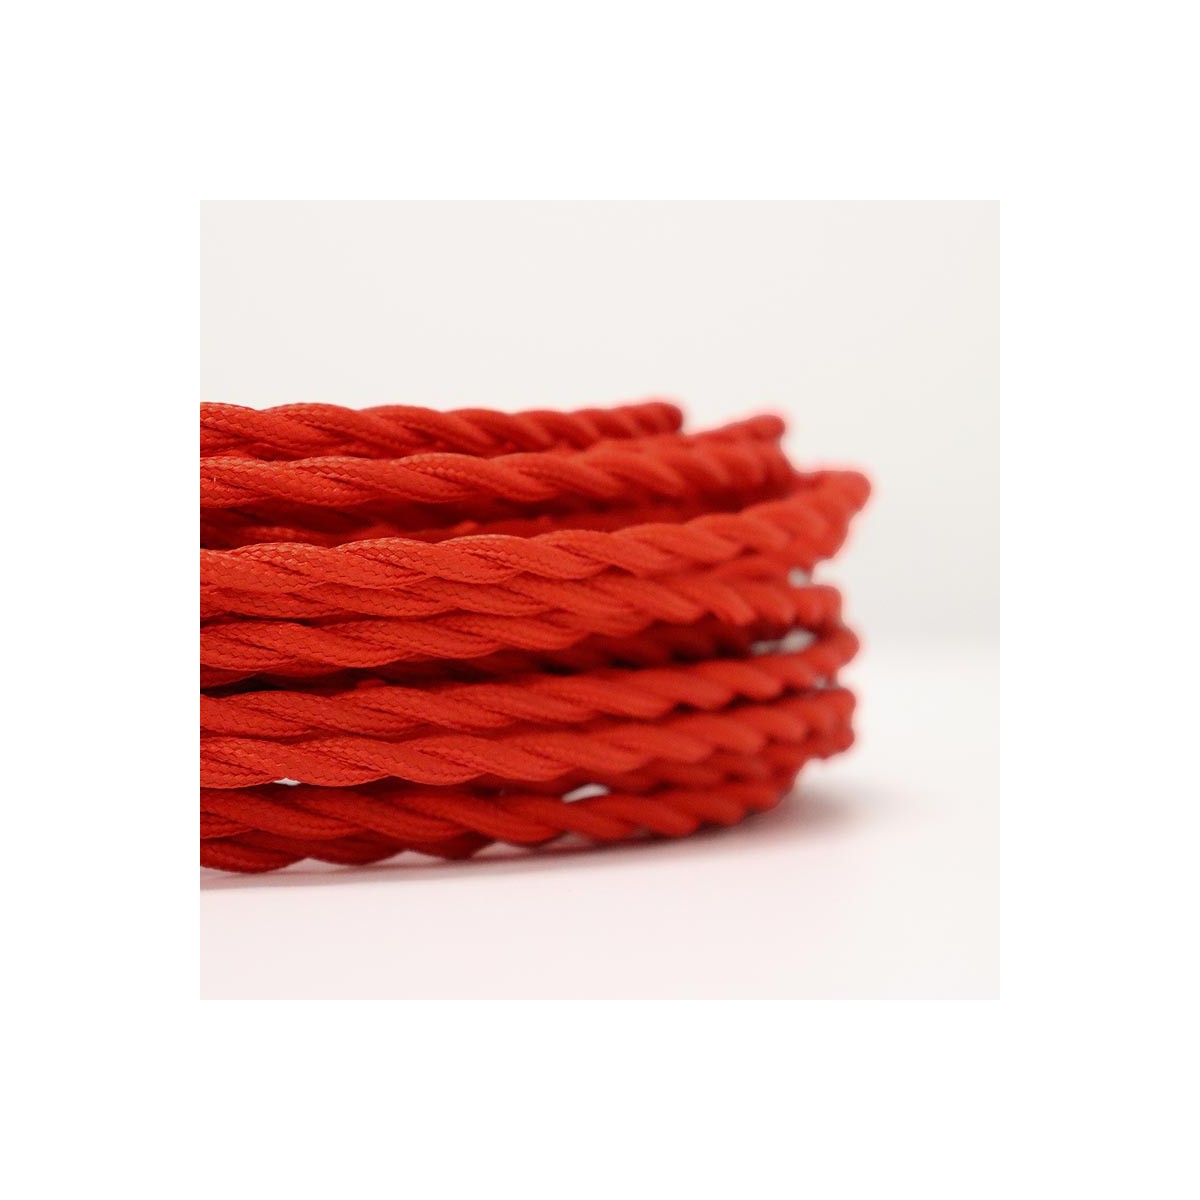 Geflochtenes Elektrokabel aus Seidenstoff Farbe Rot